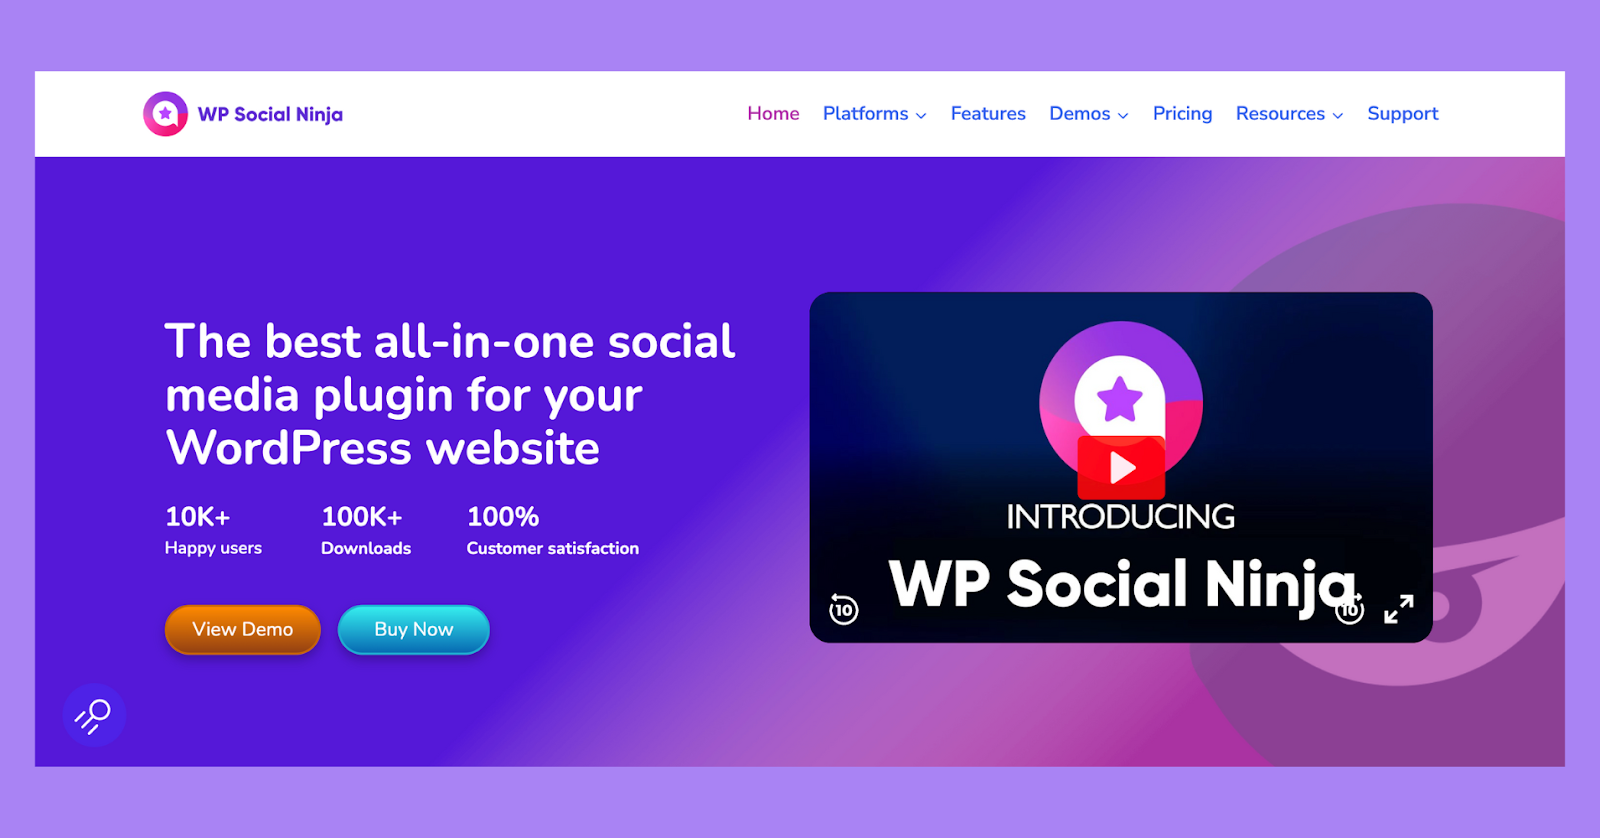 WP Social Ninja, an all-in-one social media widget.